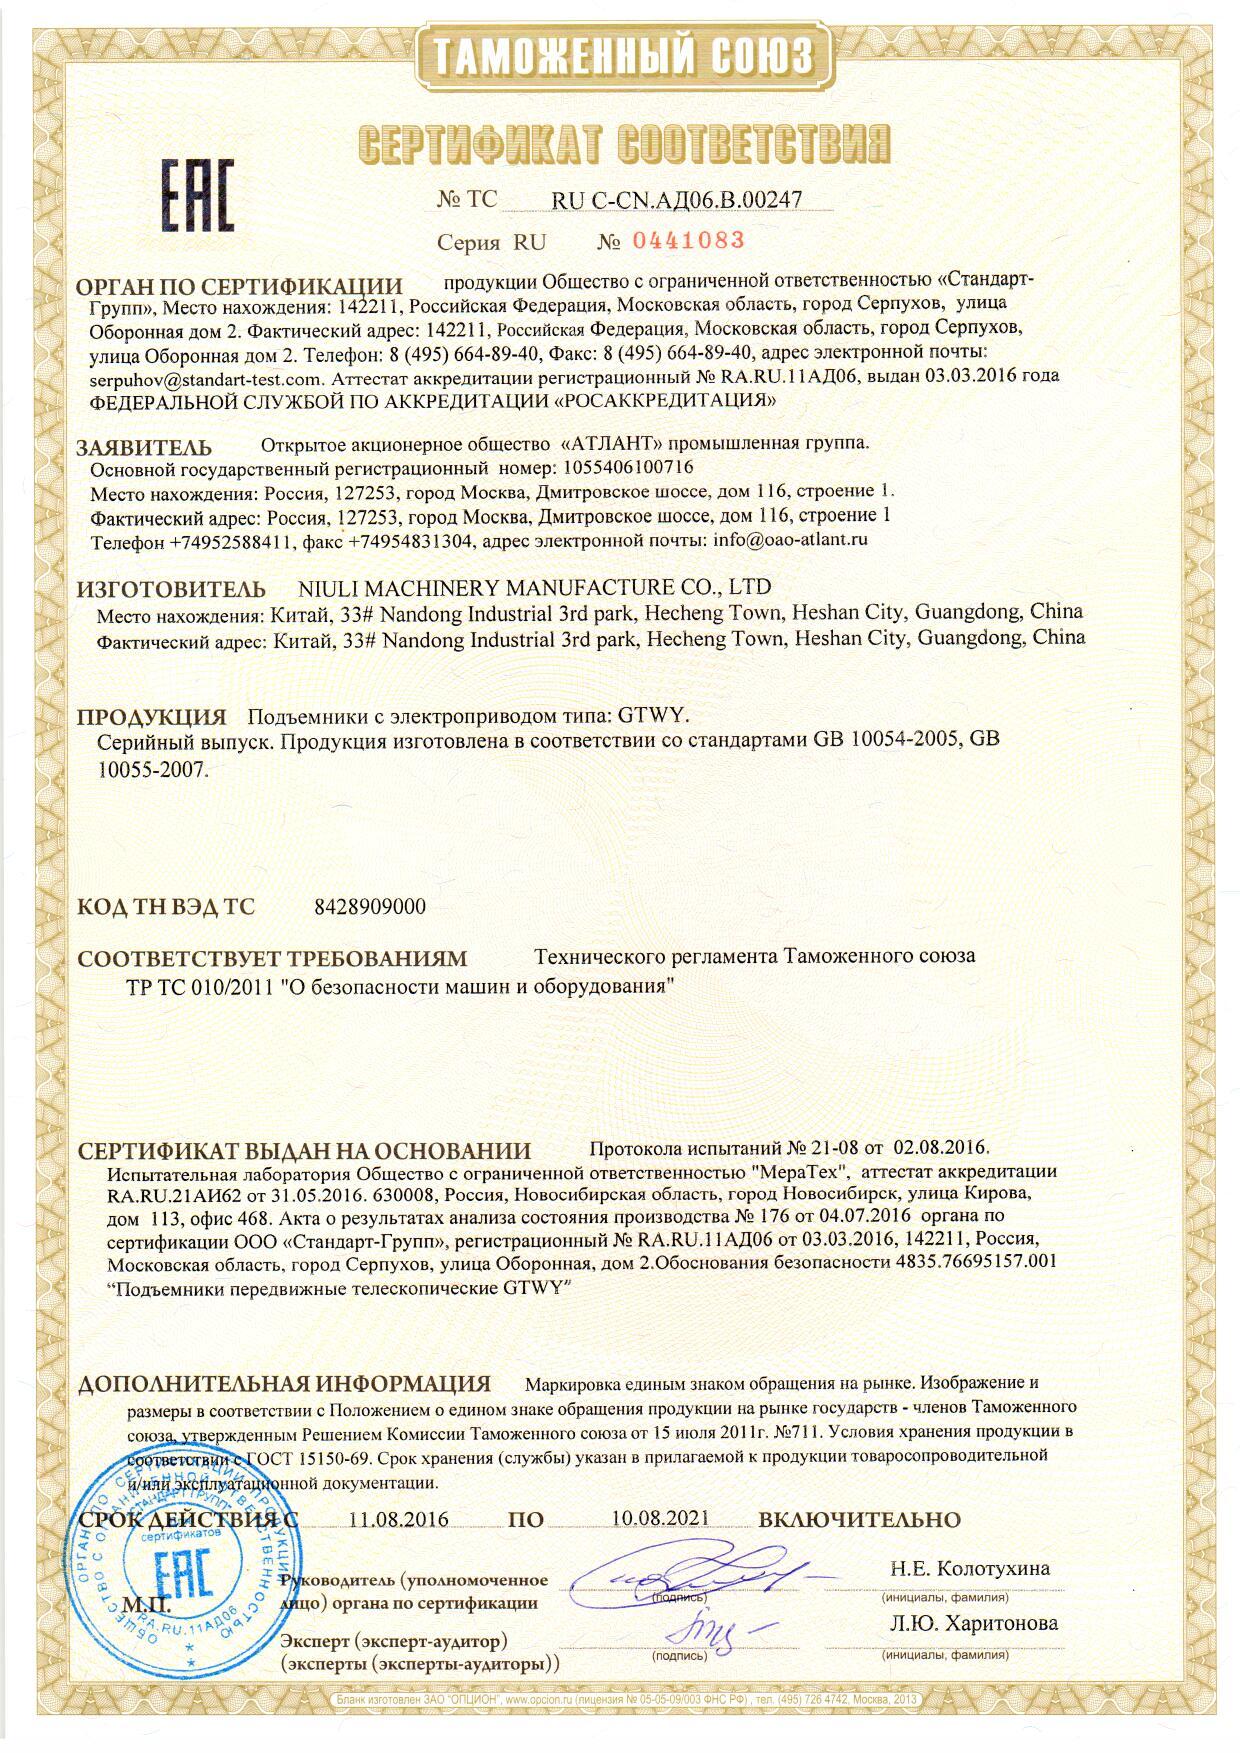 Сертификат соответствия подъемника GTWY